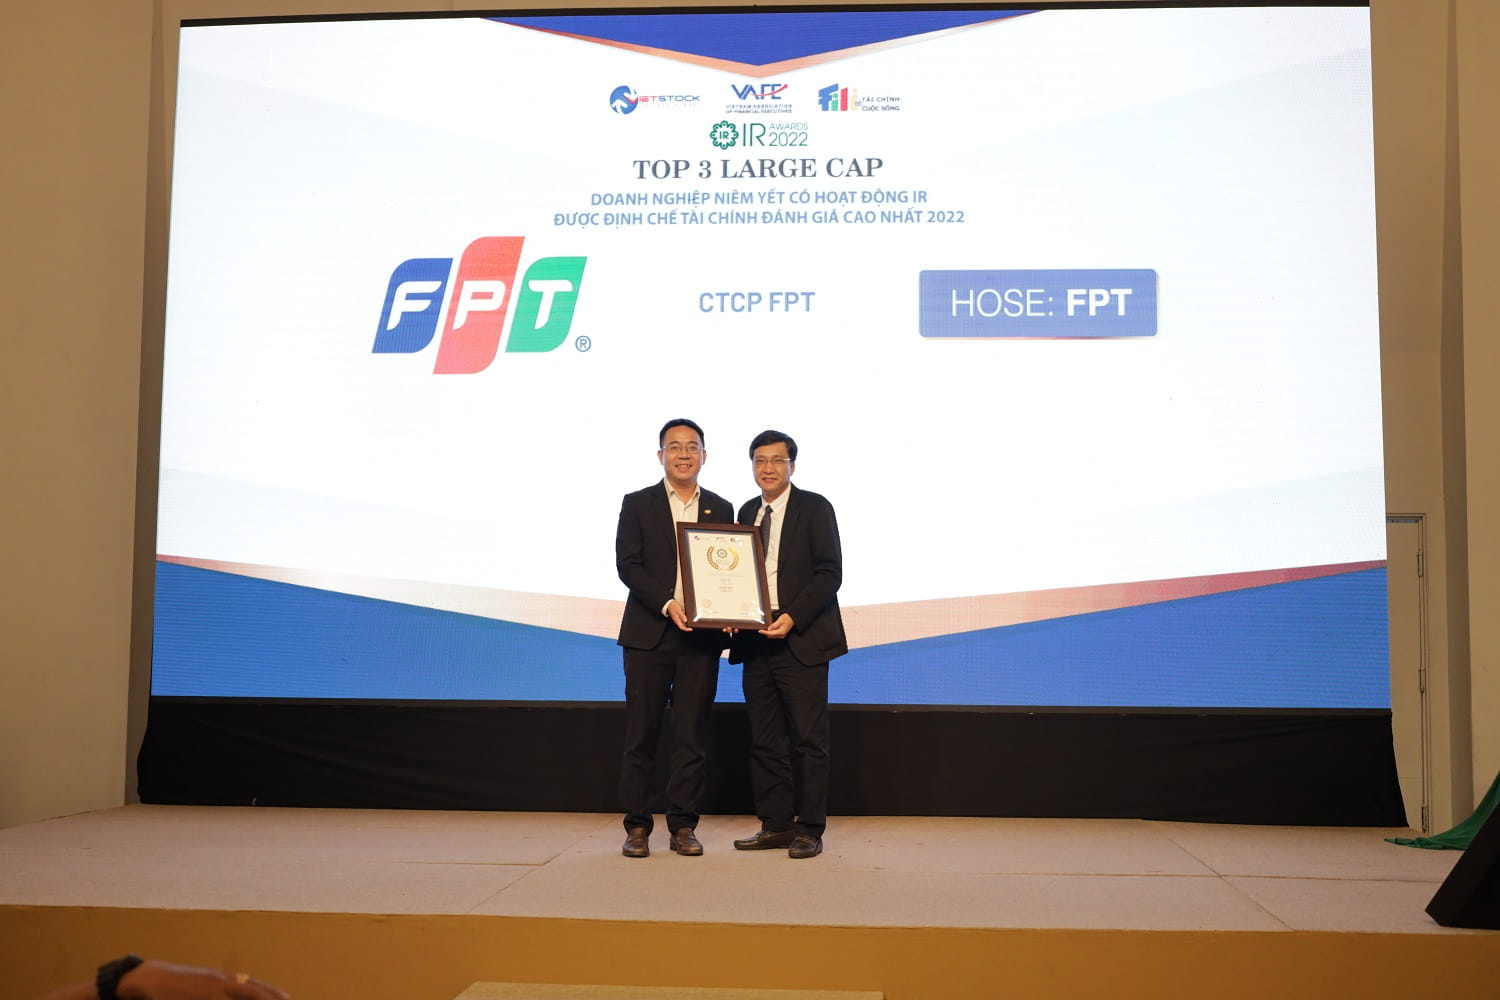 Đại diện Tập đoàn FPT, ông Võ Đặng Phát Giám đốc Marketing và Truyền thông nhận giải Top 3 doanh nghiệp niêm yết có hoạt động IR được định chế tài chính đánh giá cao nhất 2022